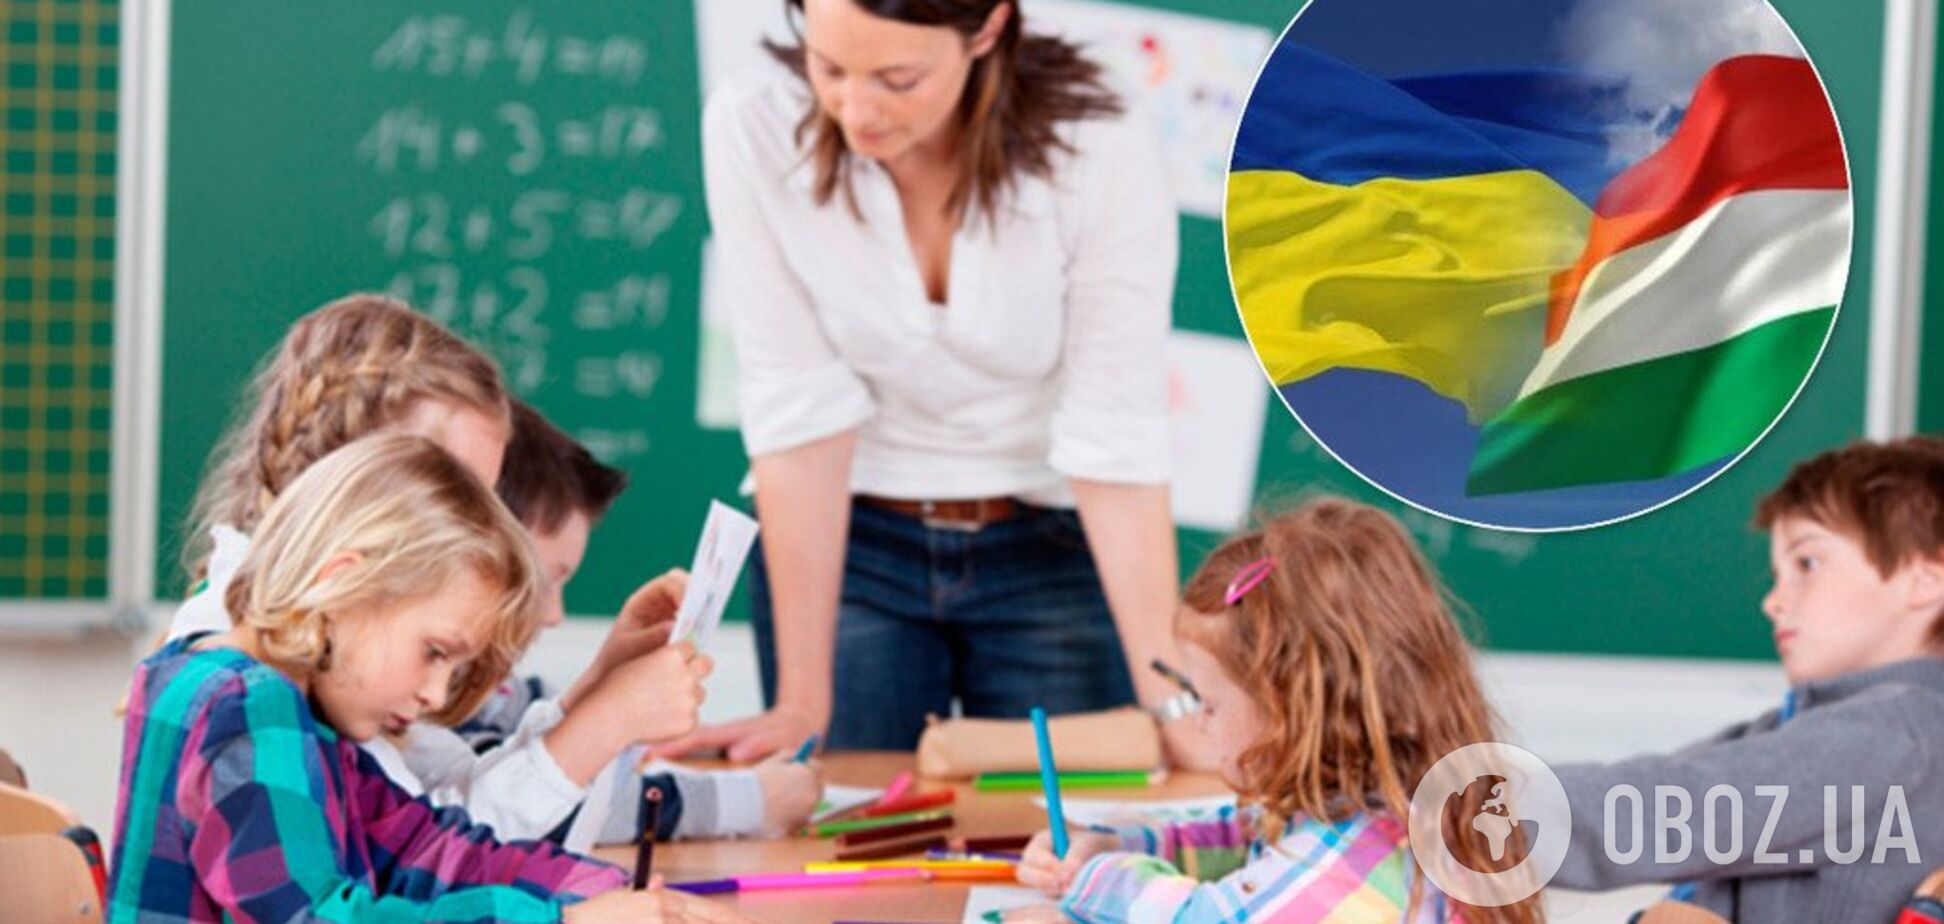 'Хотим на венгерском!' На Закарпатье родители устроили языковой скандал в школе